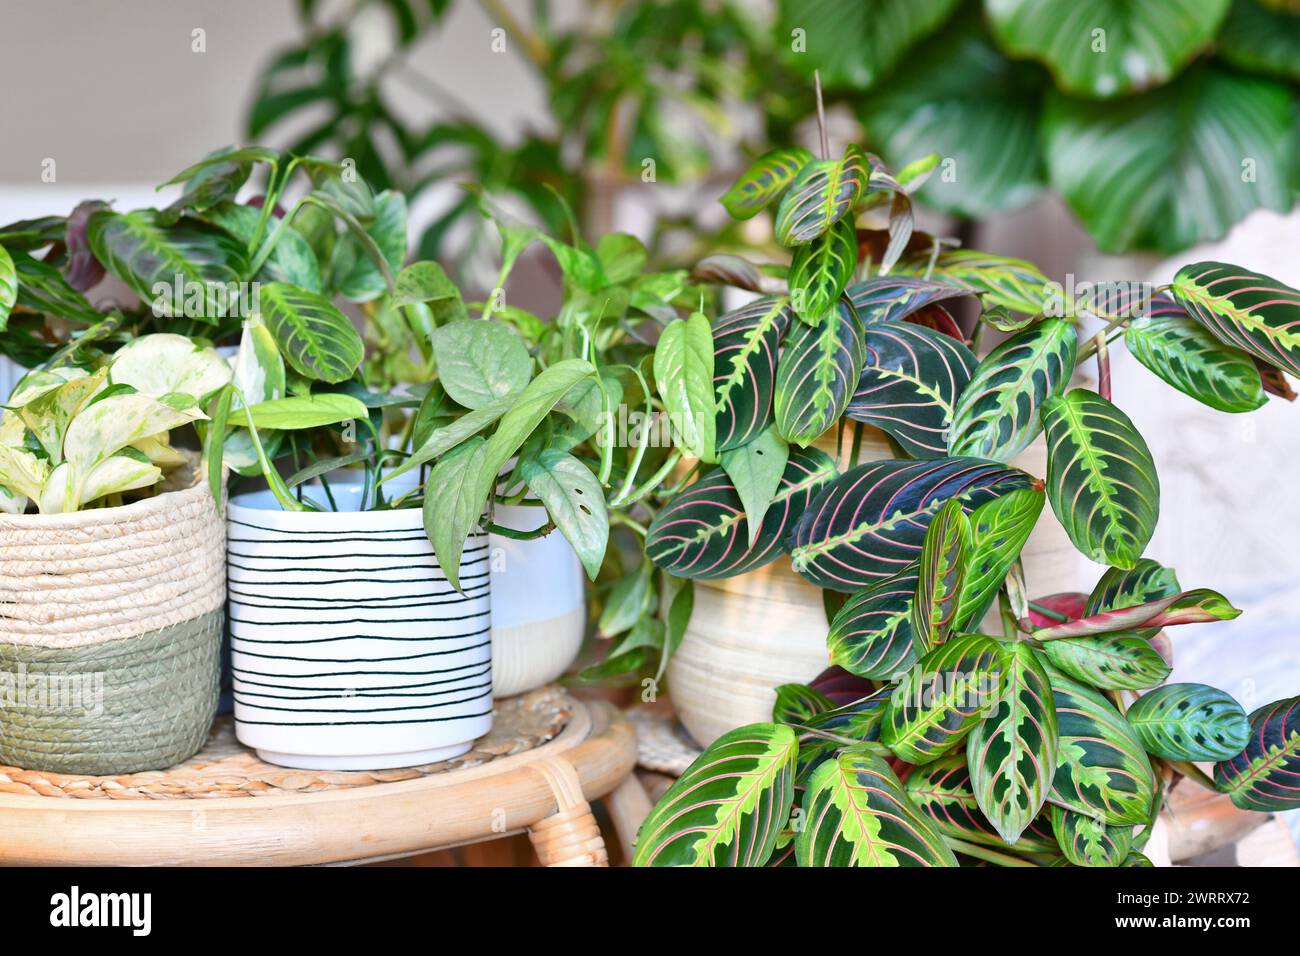 Rban-Dschungel. Verschiedene tropische Zimmerpflanzen wie Maranta, Philodendron oder Pothos in Korb Blumentöpfe auf Tischen Stockfoto